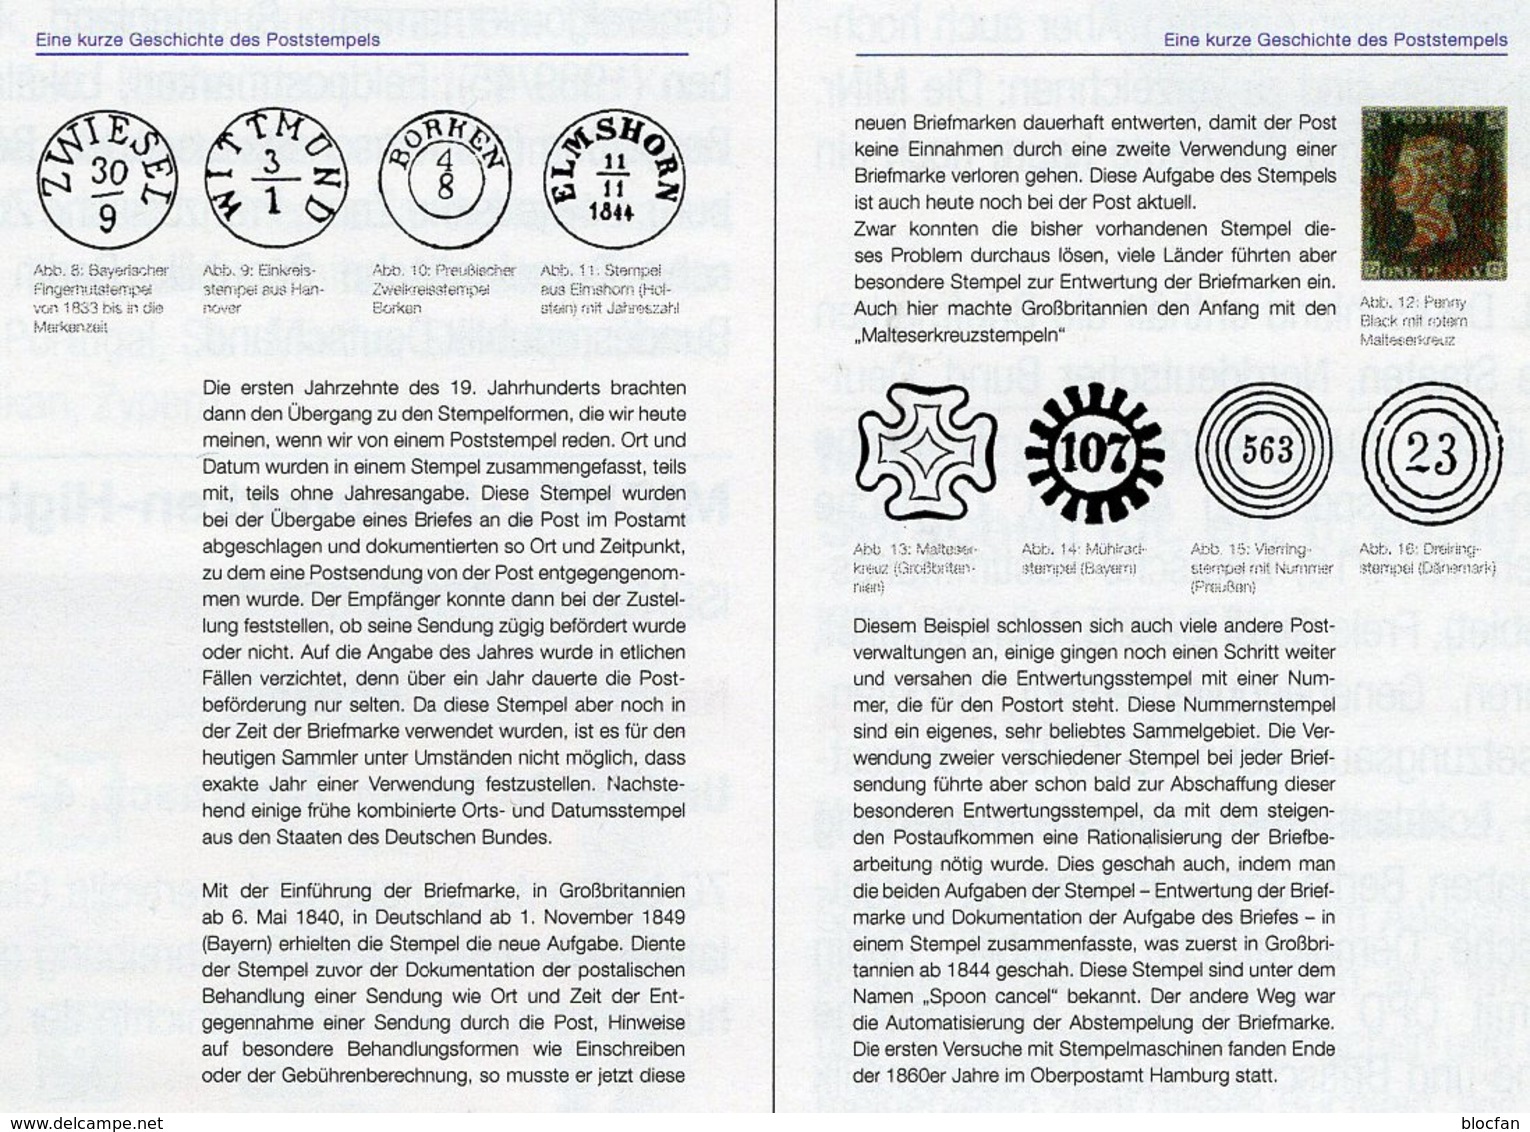 Stempel Verstehen Ratgeber 2020 New 50€ MICHEL Briefmarken Stempelarten Wert Bestimmen Stamps ISBN978 3 95402 252 6 - Philately